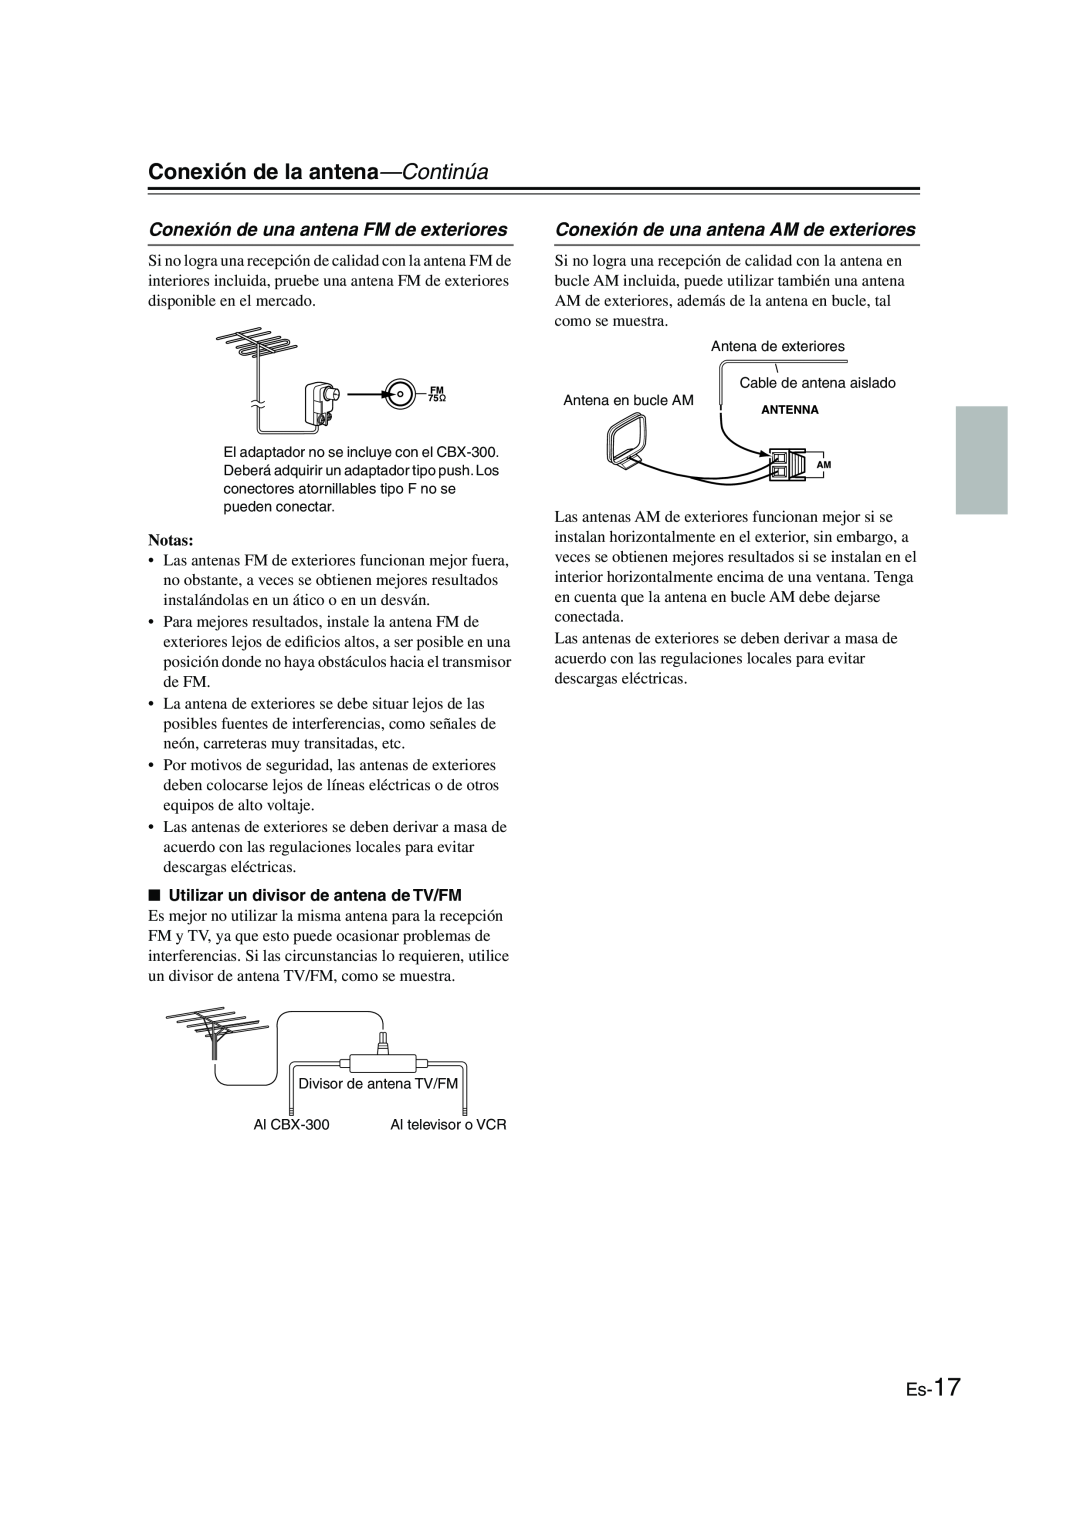 Onkyo CBX-300 instruction manual Conexión de la antena—Continúa, Conexión de una antena FM de exteriores, Es-17, Notas 